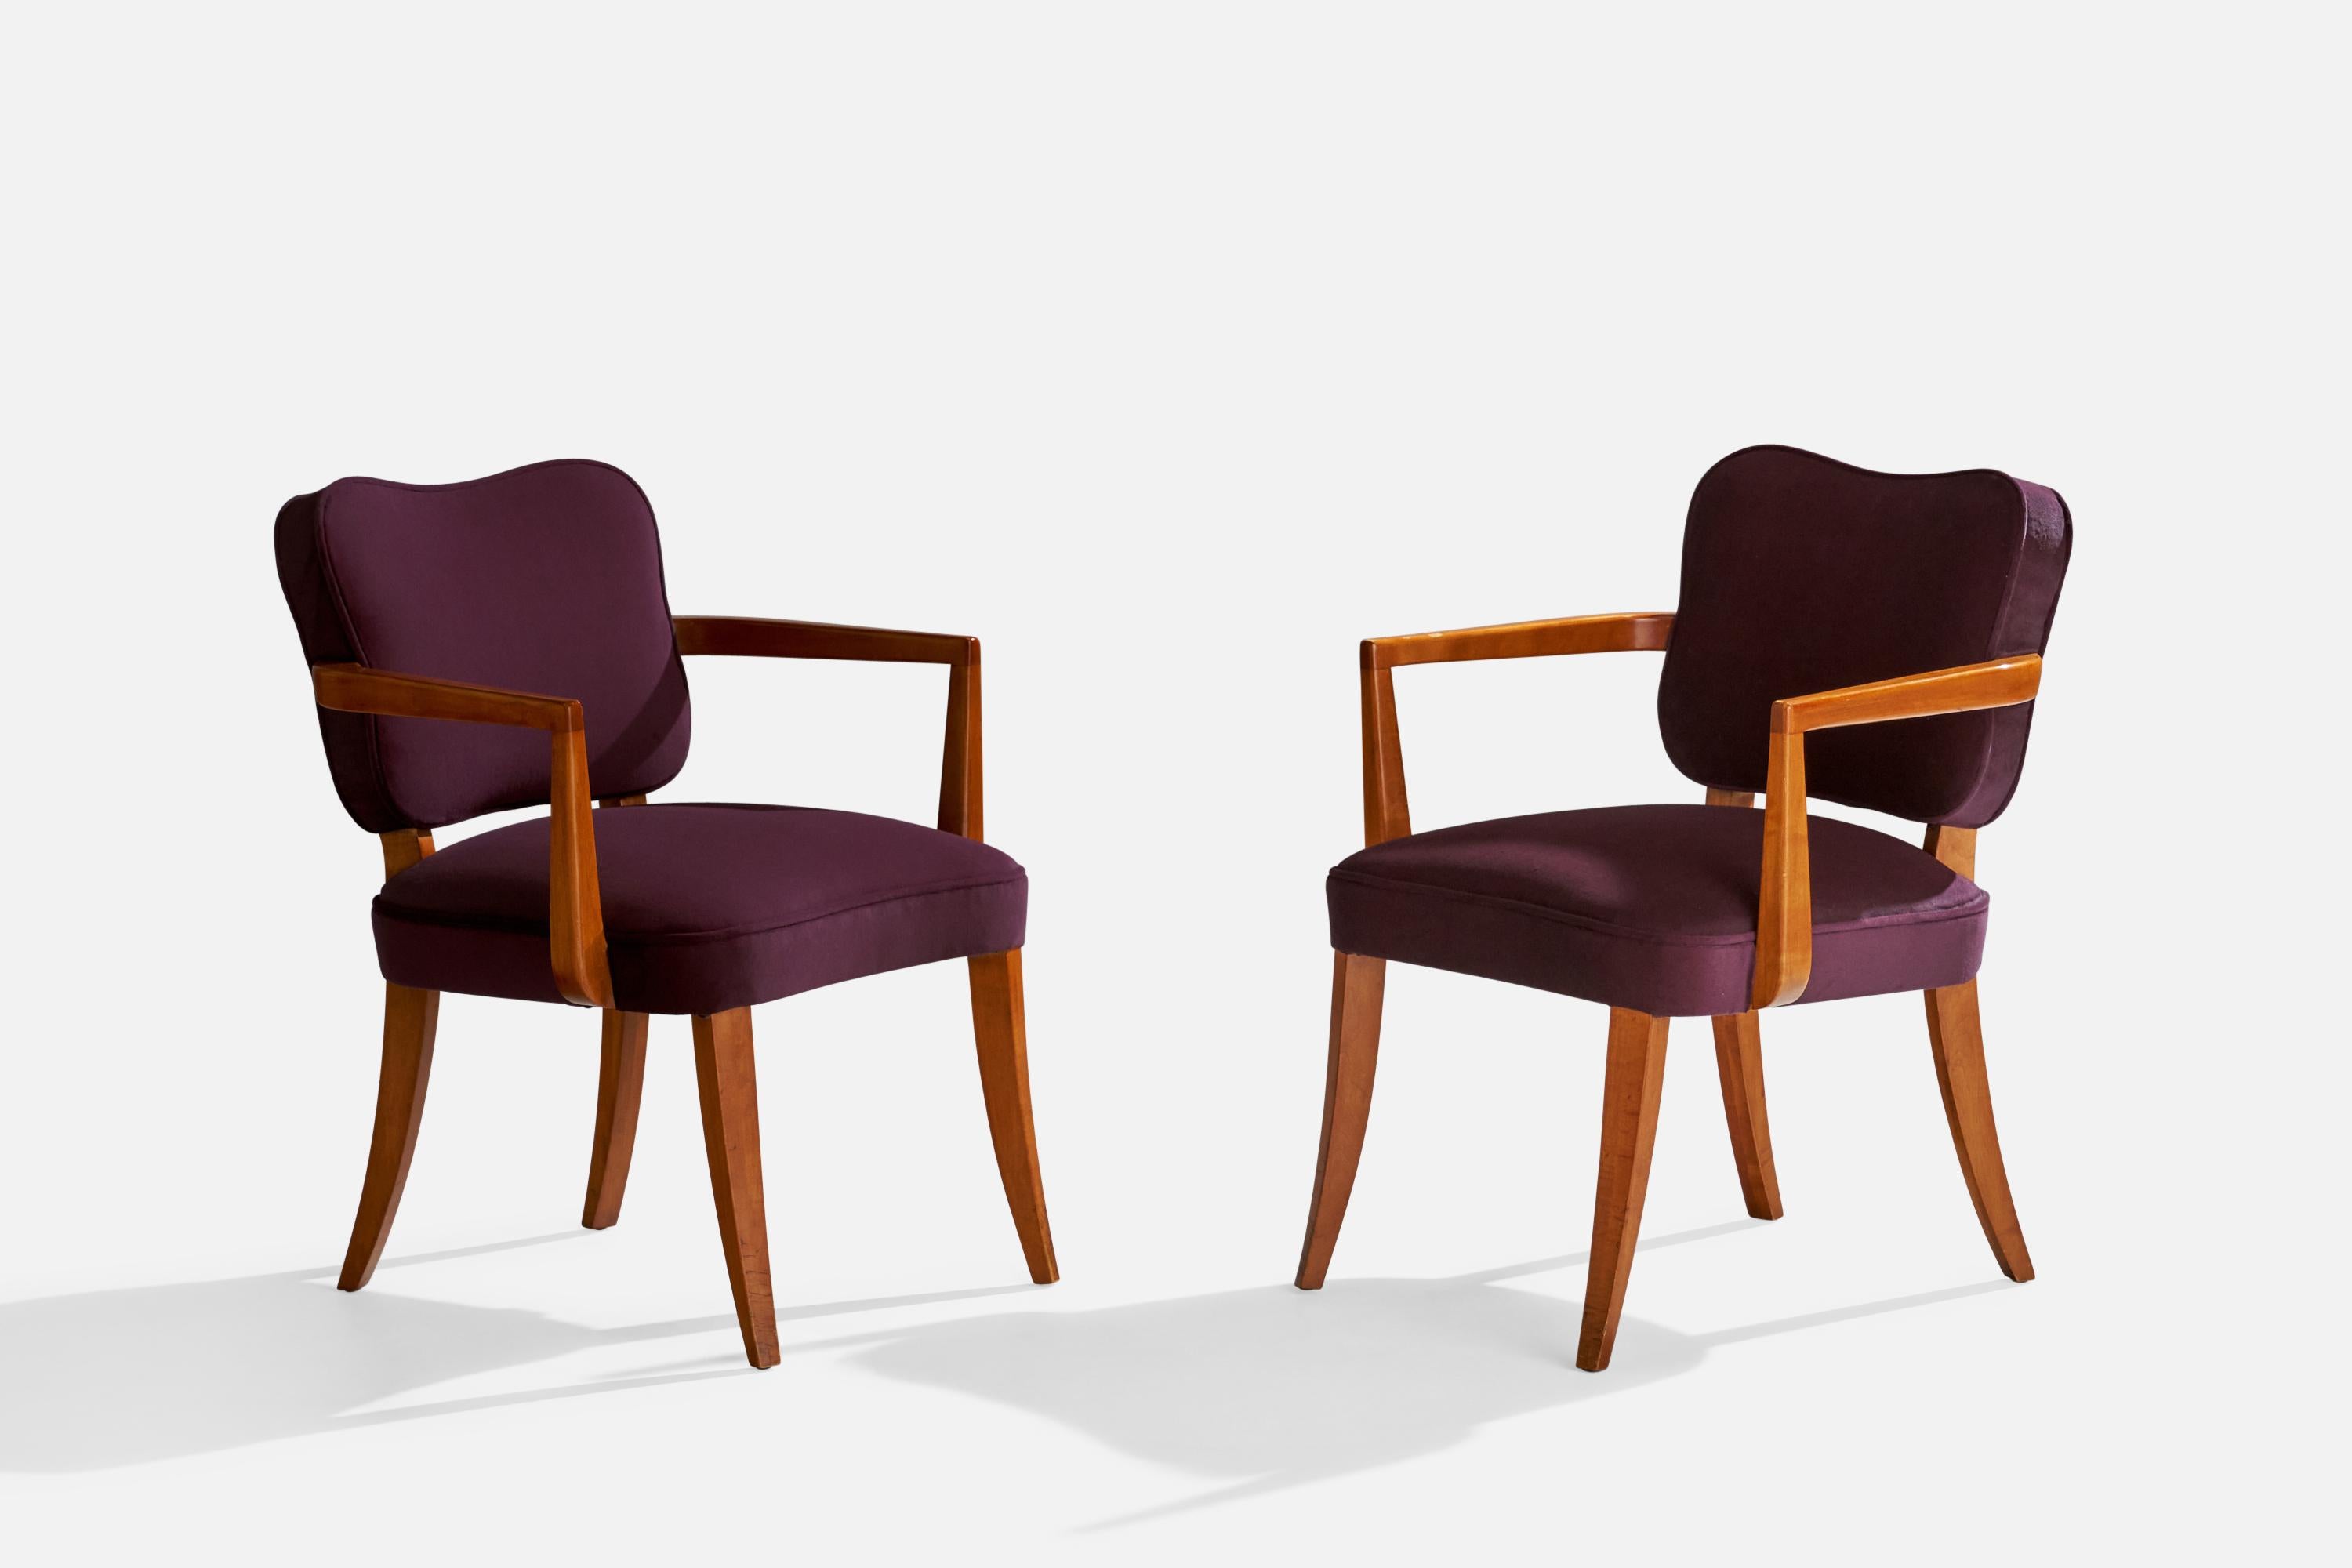 Ein Paar Sessel aus Kirschholz und violettem Samt, entworfen von Gilbert Rohde und hergestellt von Herman Miller, Zeeland, Michigan, 1940er Jahre. 

Sitzhöhe 17,5